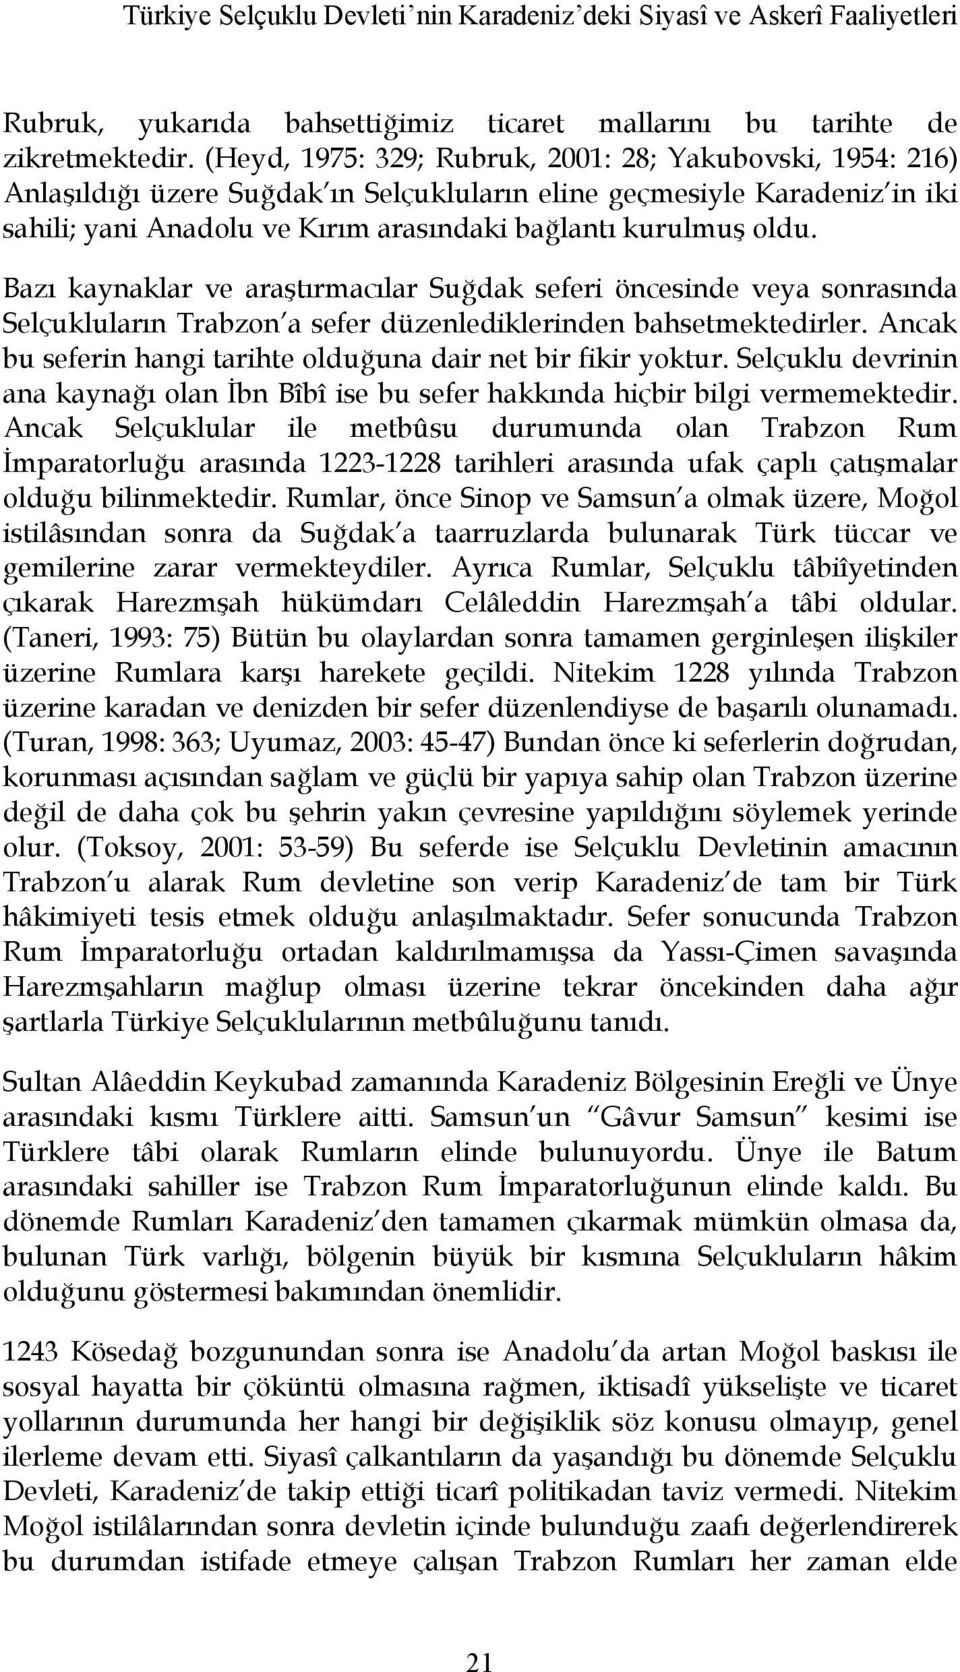 Bazı kaynaklar ve araştırmacılar Suğdak seferi öncesinde veya sonrasında Selçukluların Trabzon a sefer düzenlediklerinden bahsetmektedirler.